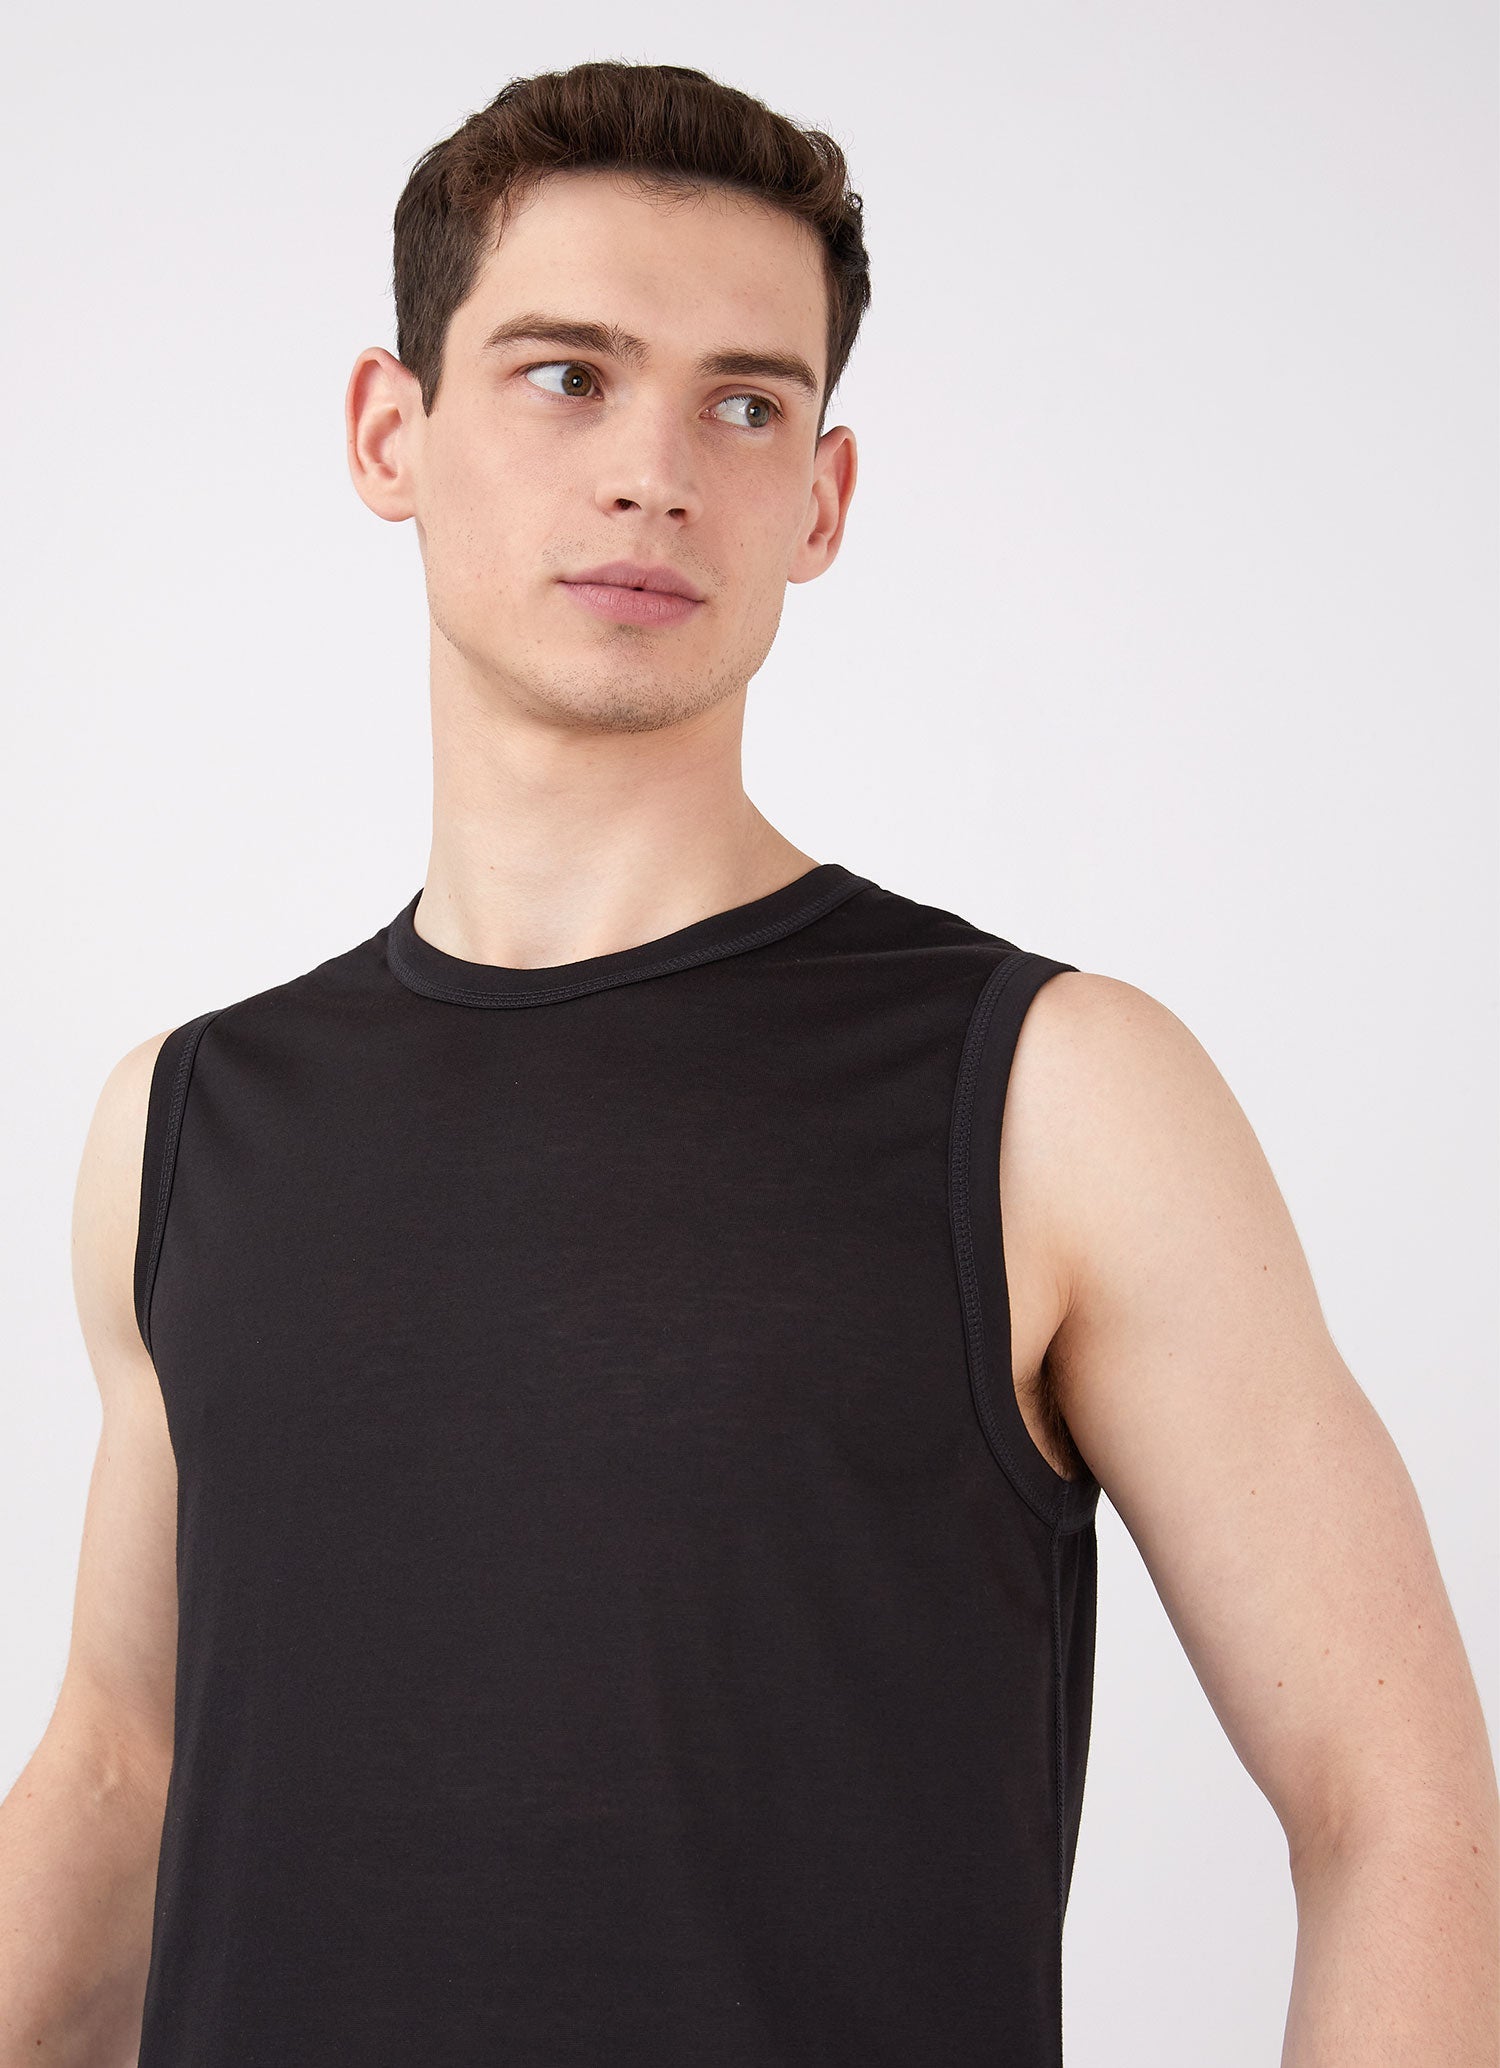 Men's DriRelease Active Vest in Black